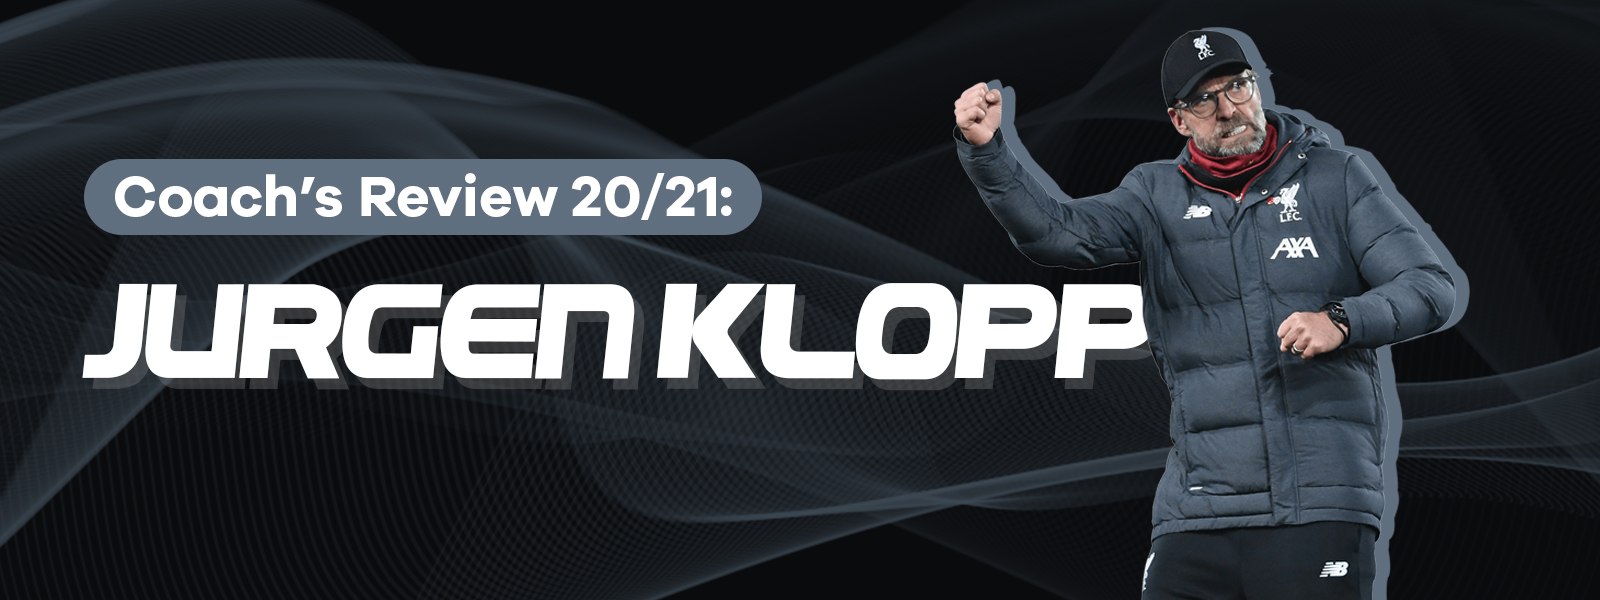 Jurgen Klopp Football Manager Reviews